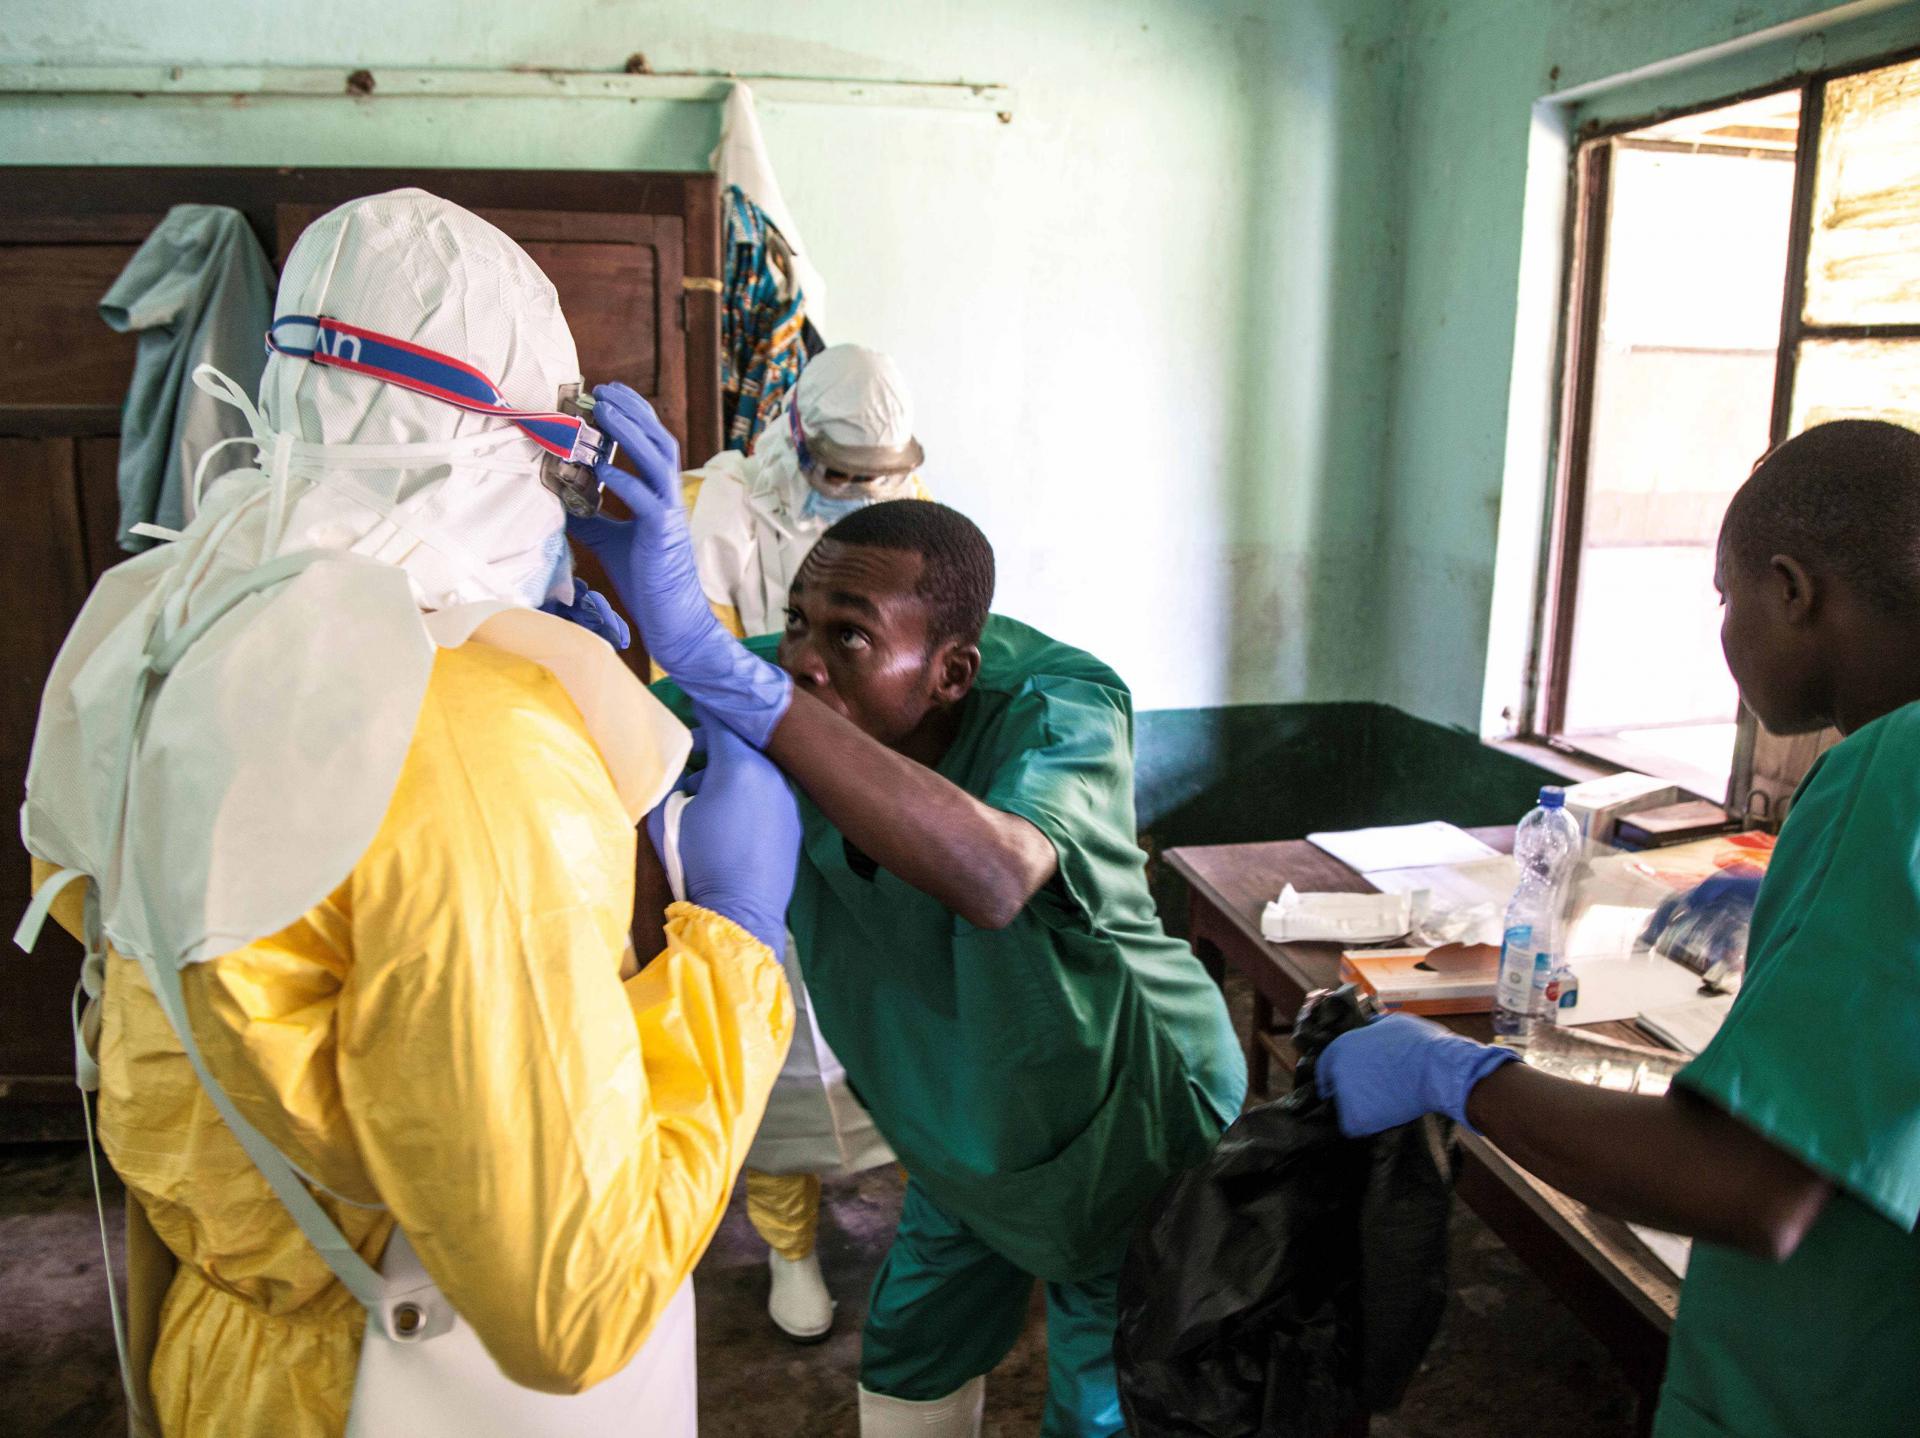 عاملون في مجال الصحة يرتدون معدات الوقاية أثناء تحضيرهم لاستقبال مشتبه بإصابتهم بإيبولا